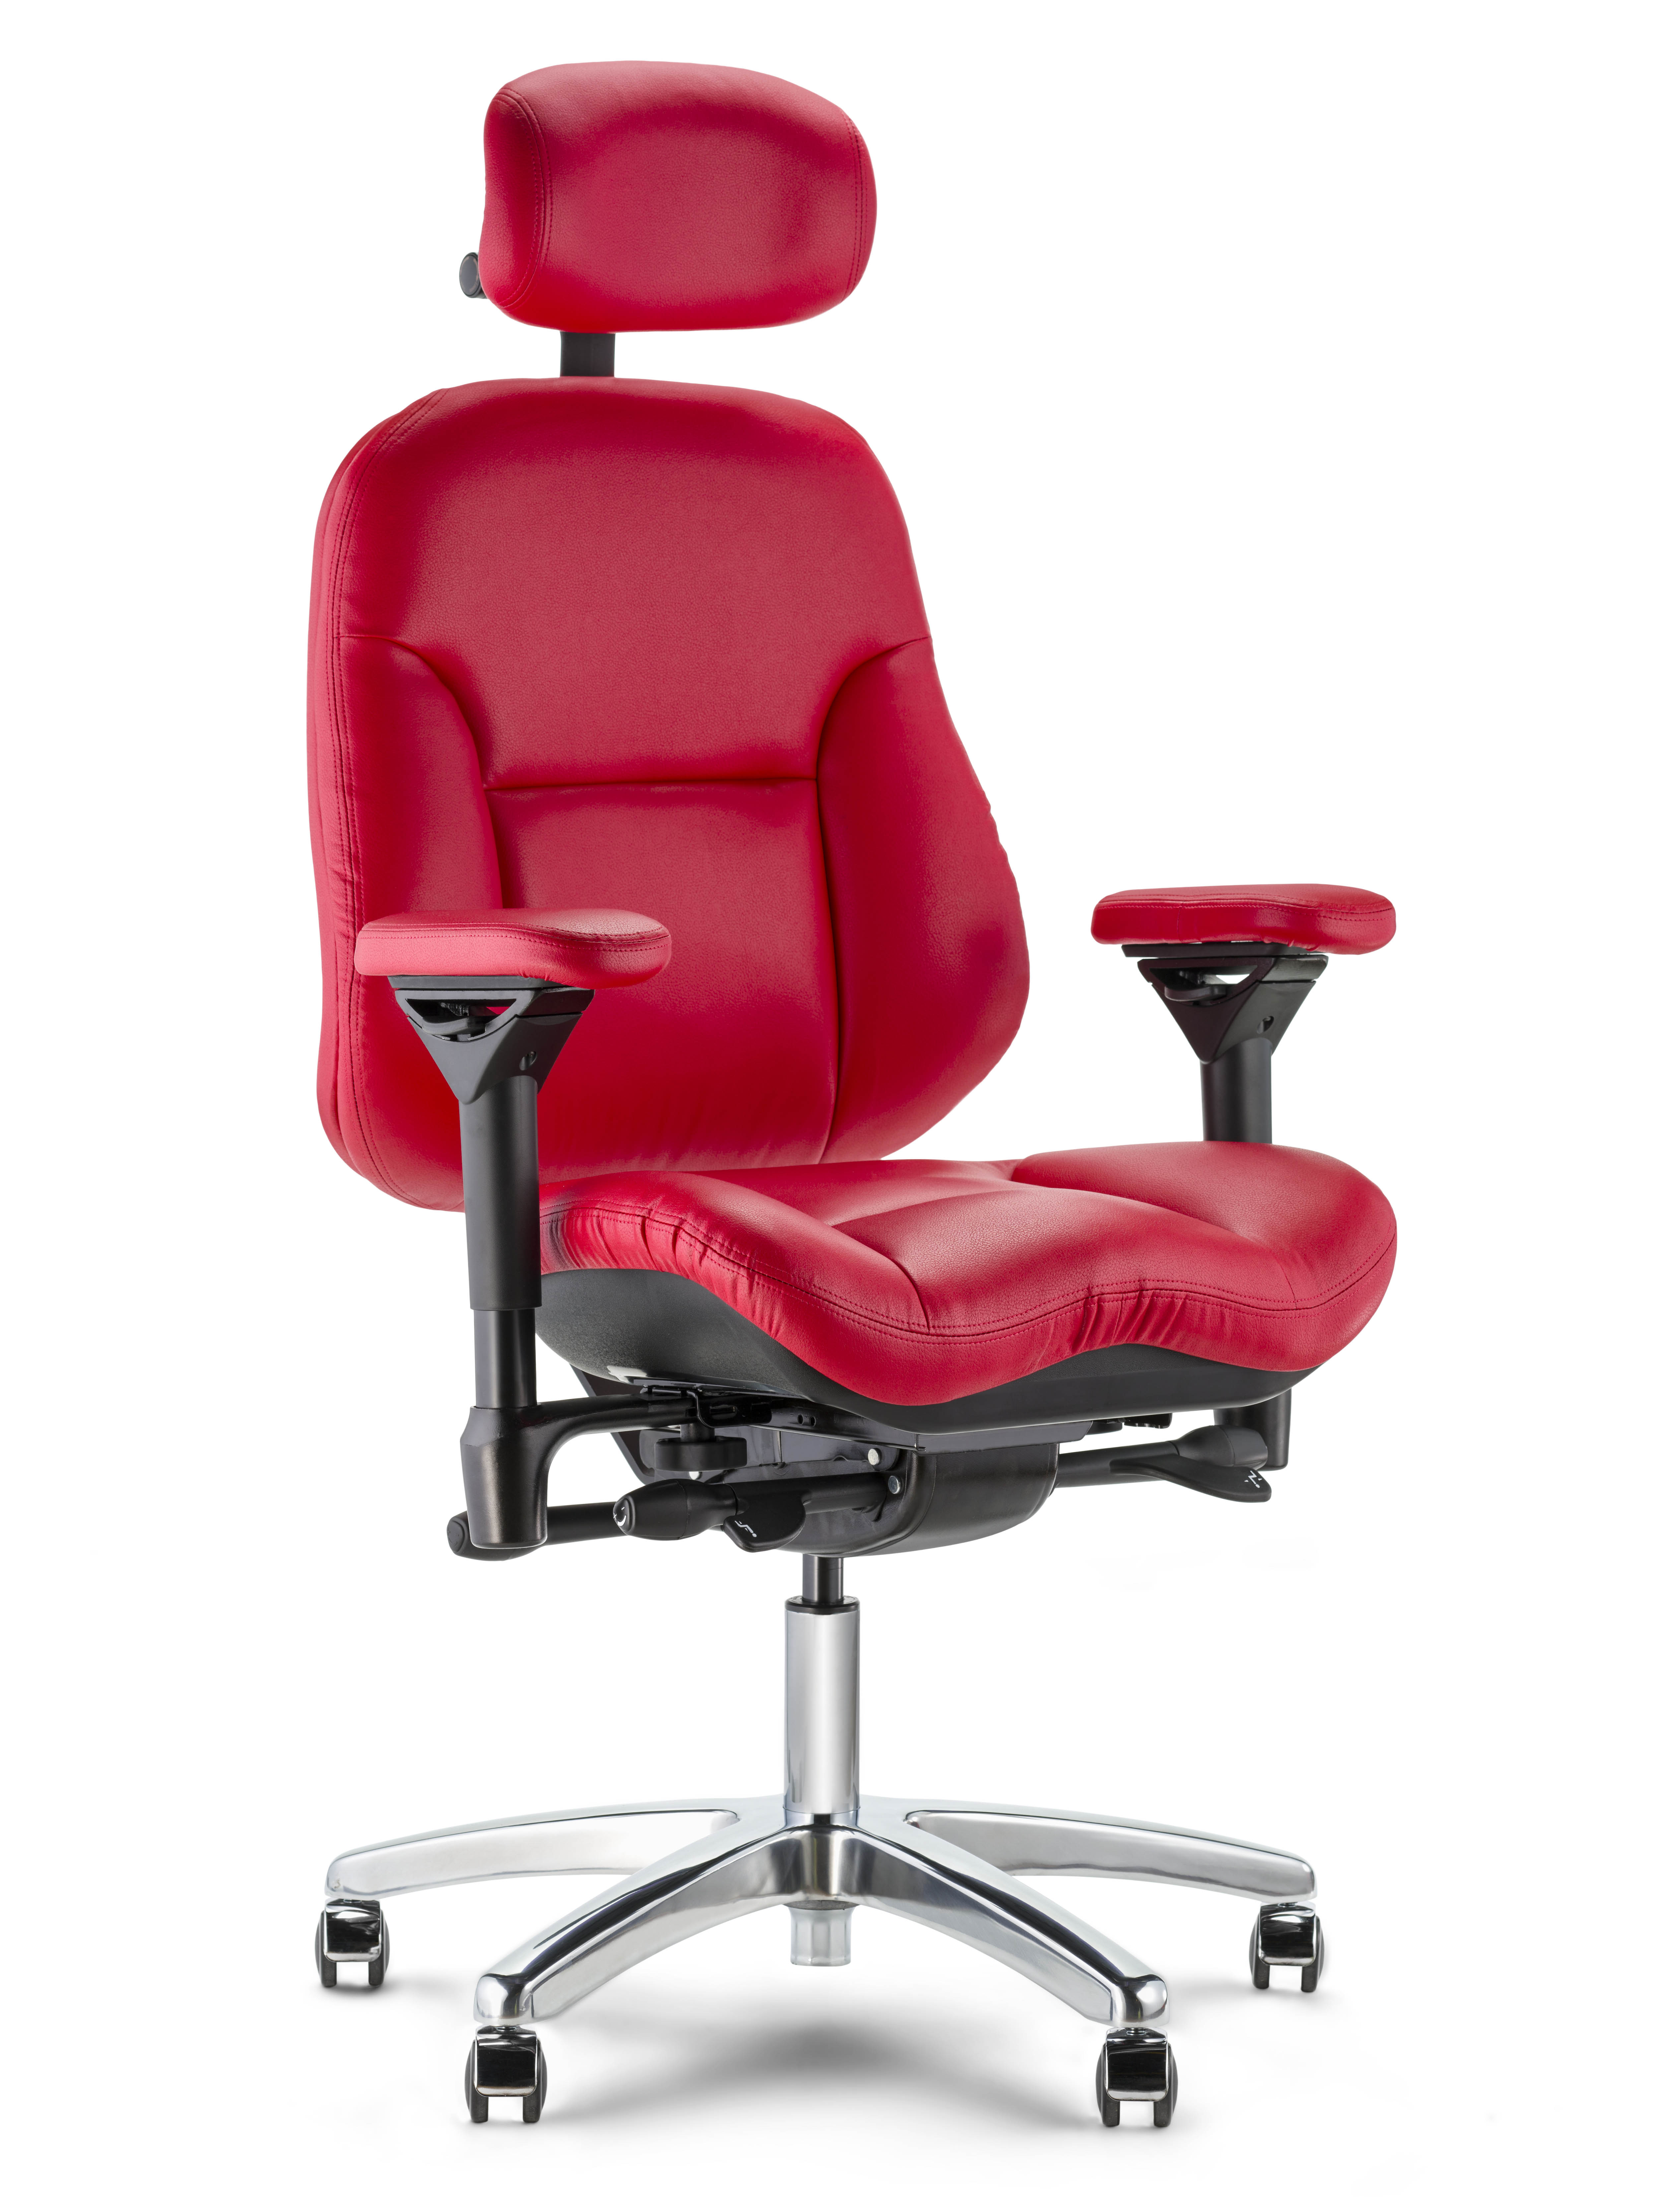 R3507 B13 S1 Executive chair chrome base Brisa Rose Red